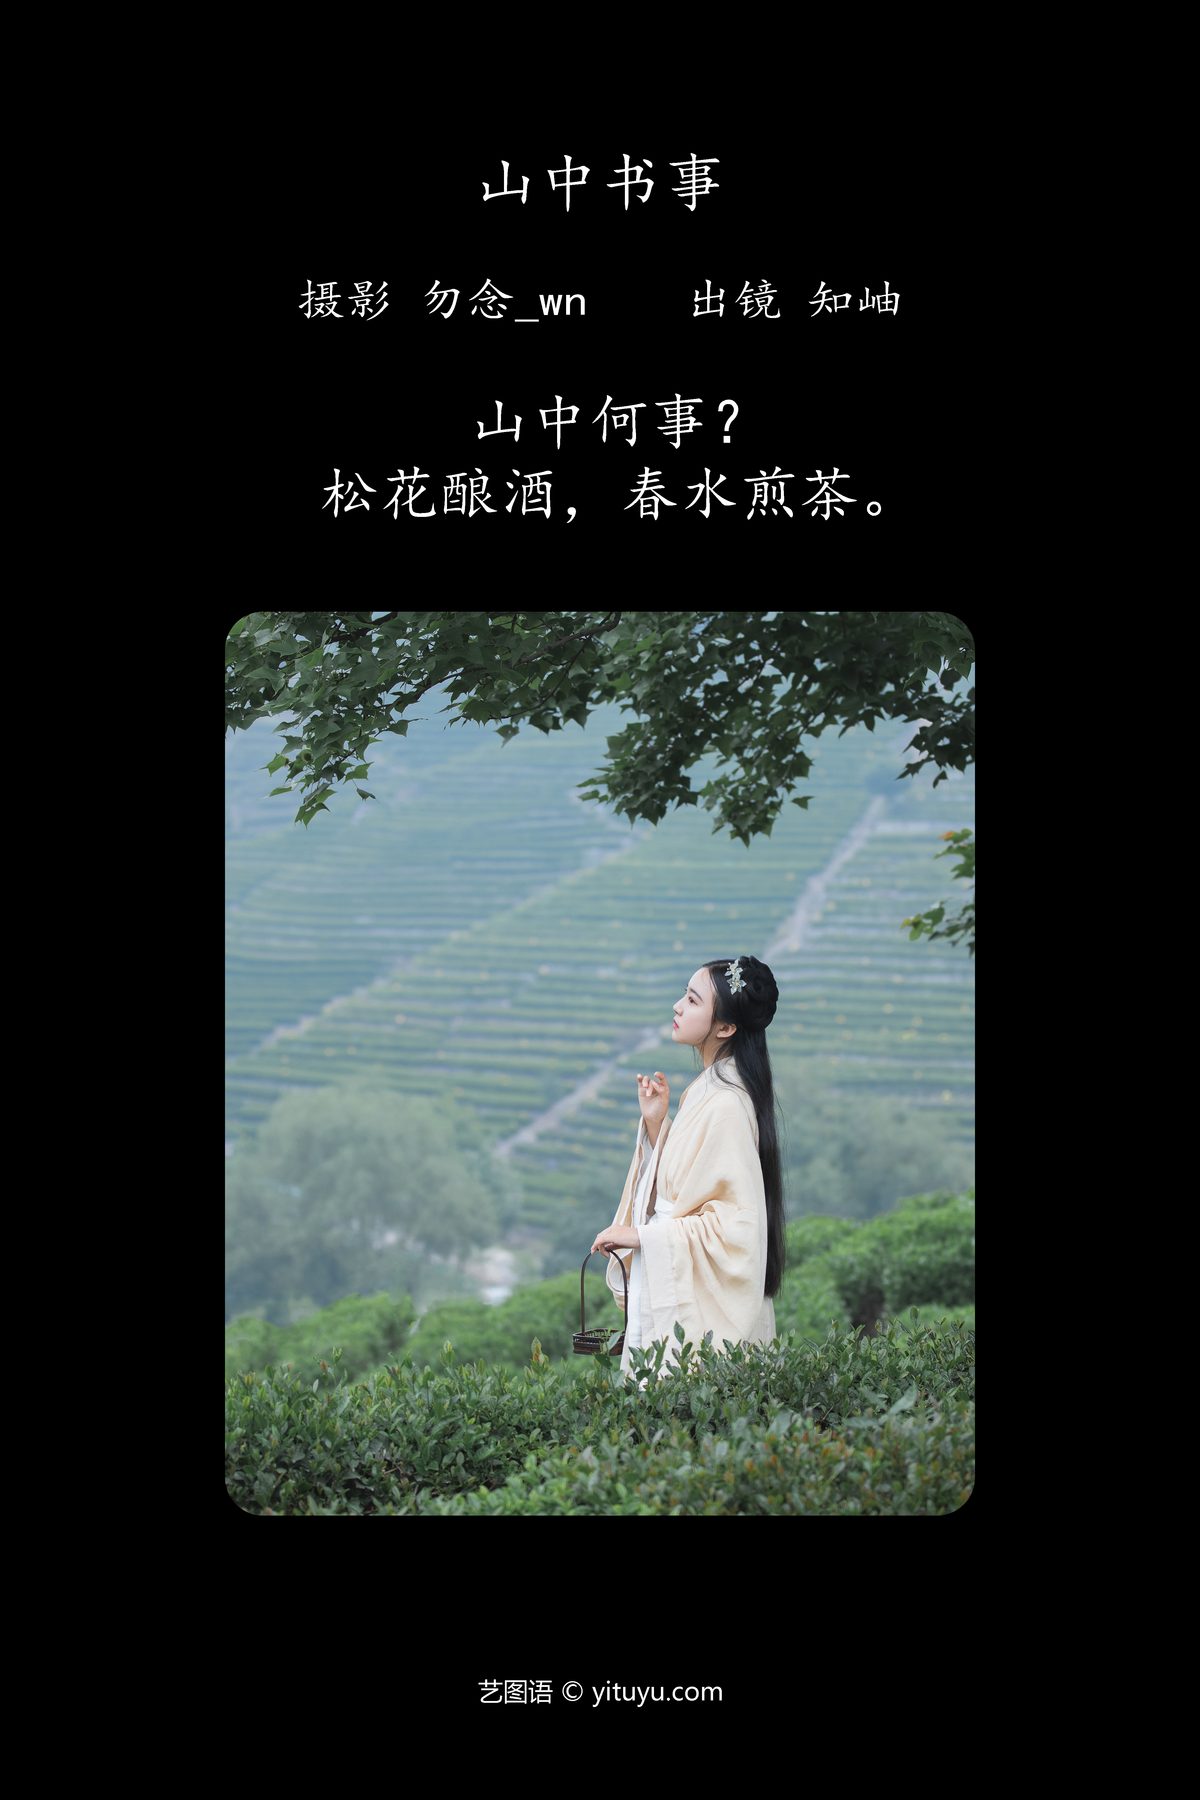 YiTuYu艺图语 Vol 4580 Zhi Xiu 0002 4745126262.jpg